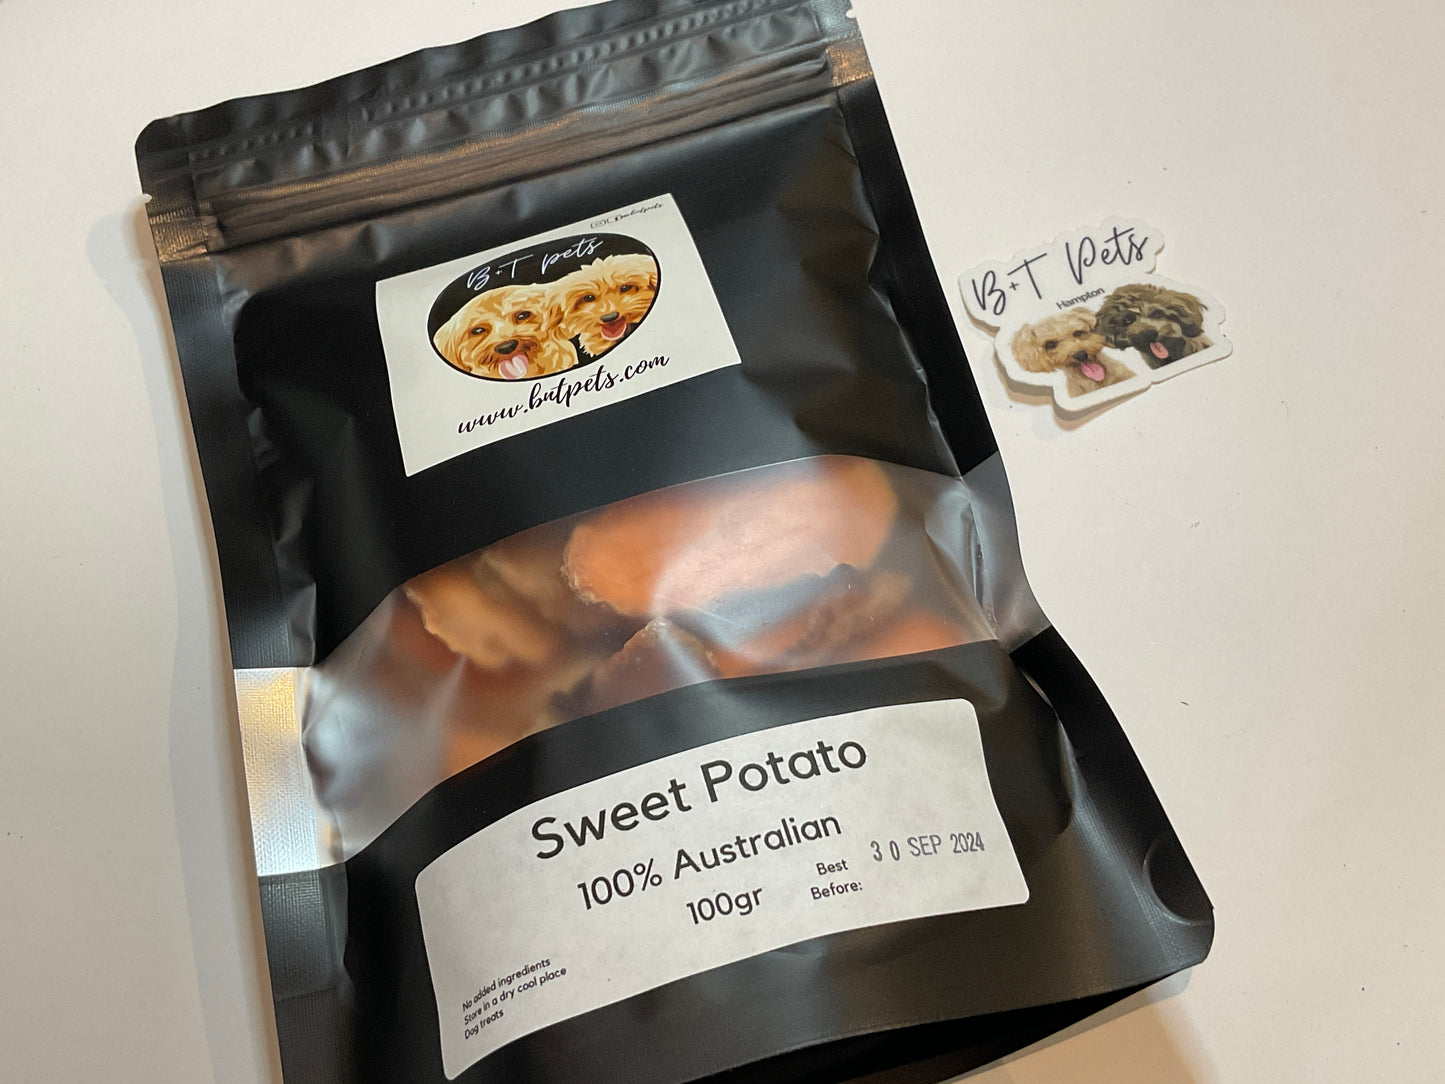 Dehydrated Australian Single Ingredient Sweet Potato 100gr